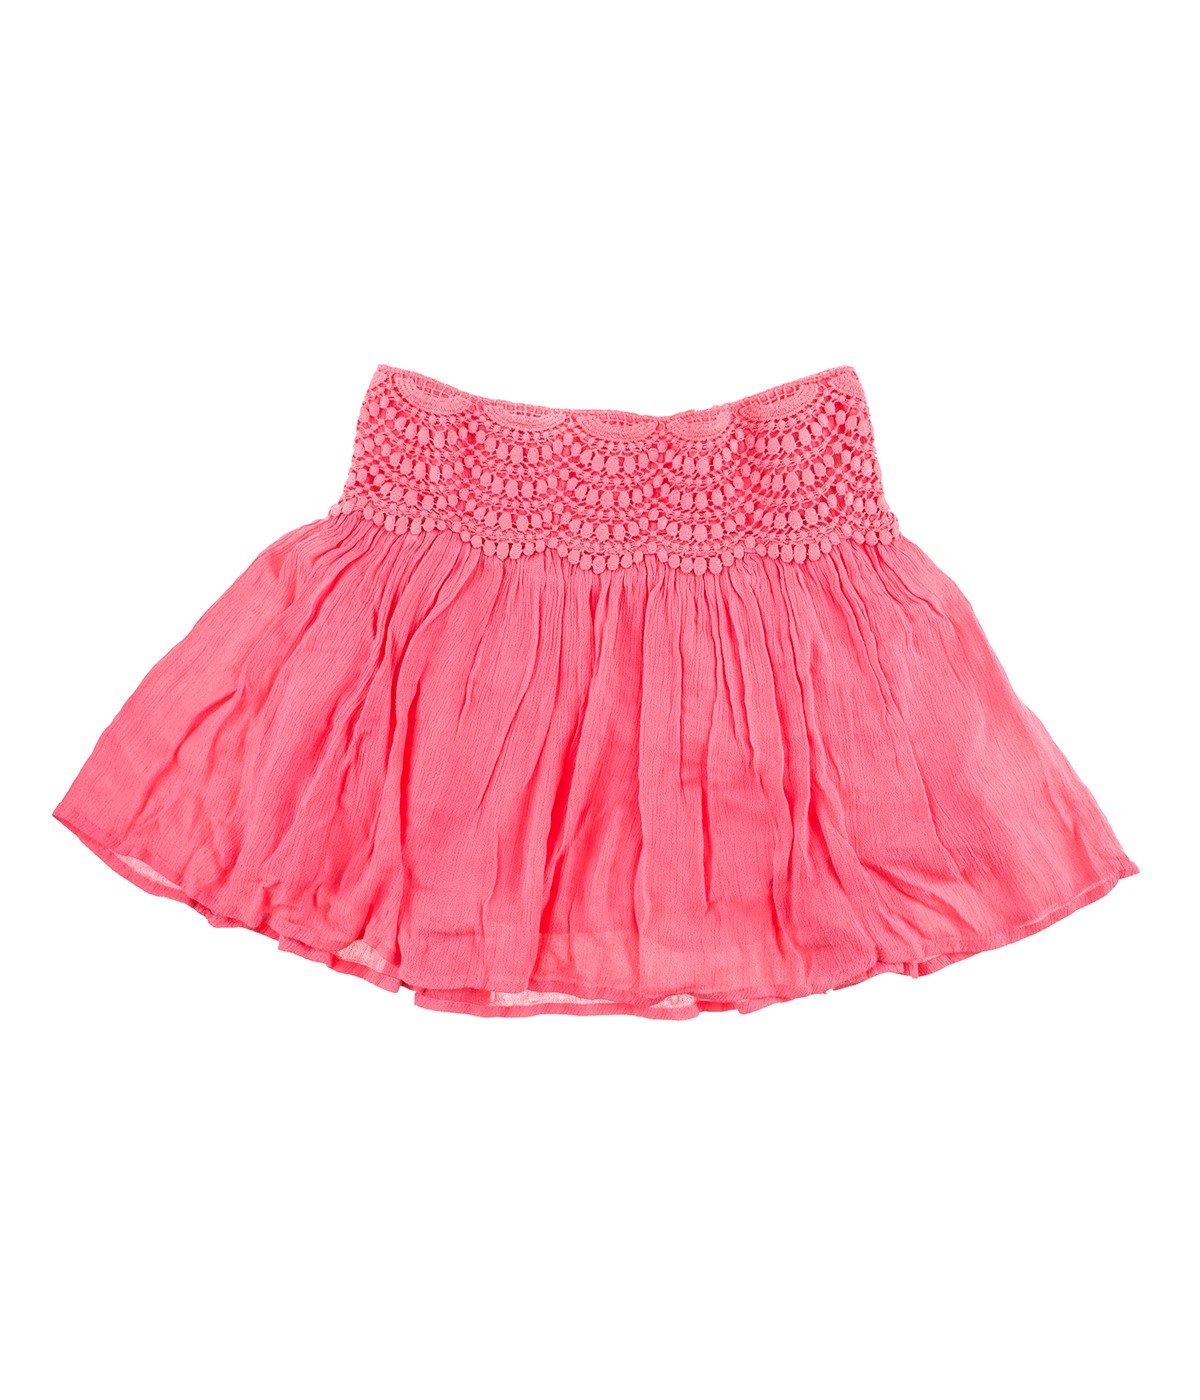 Lace Waist Skirt